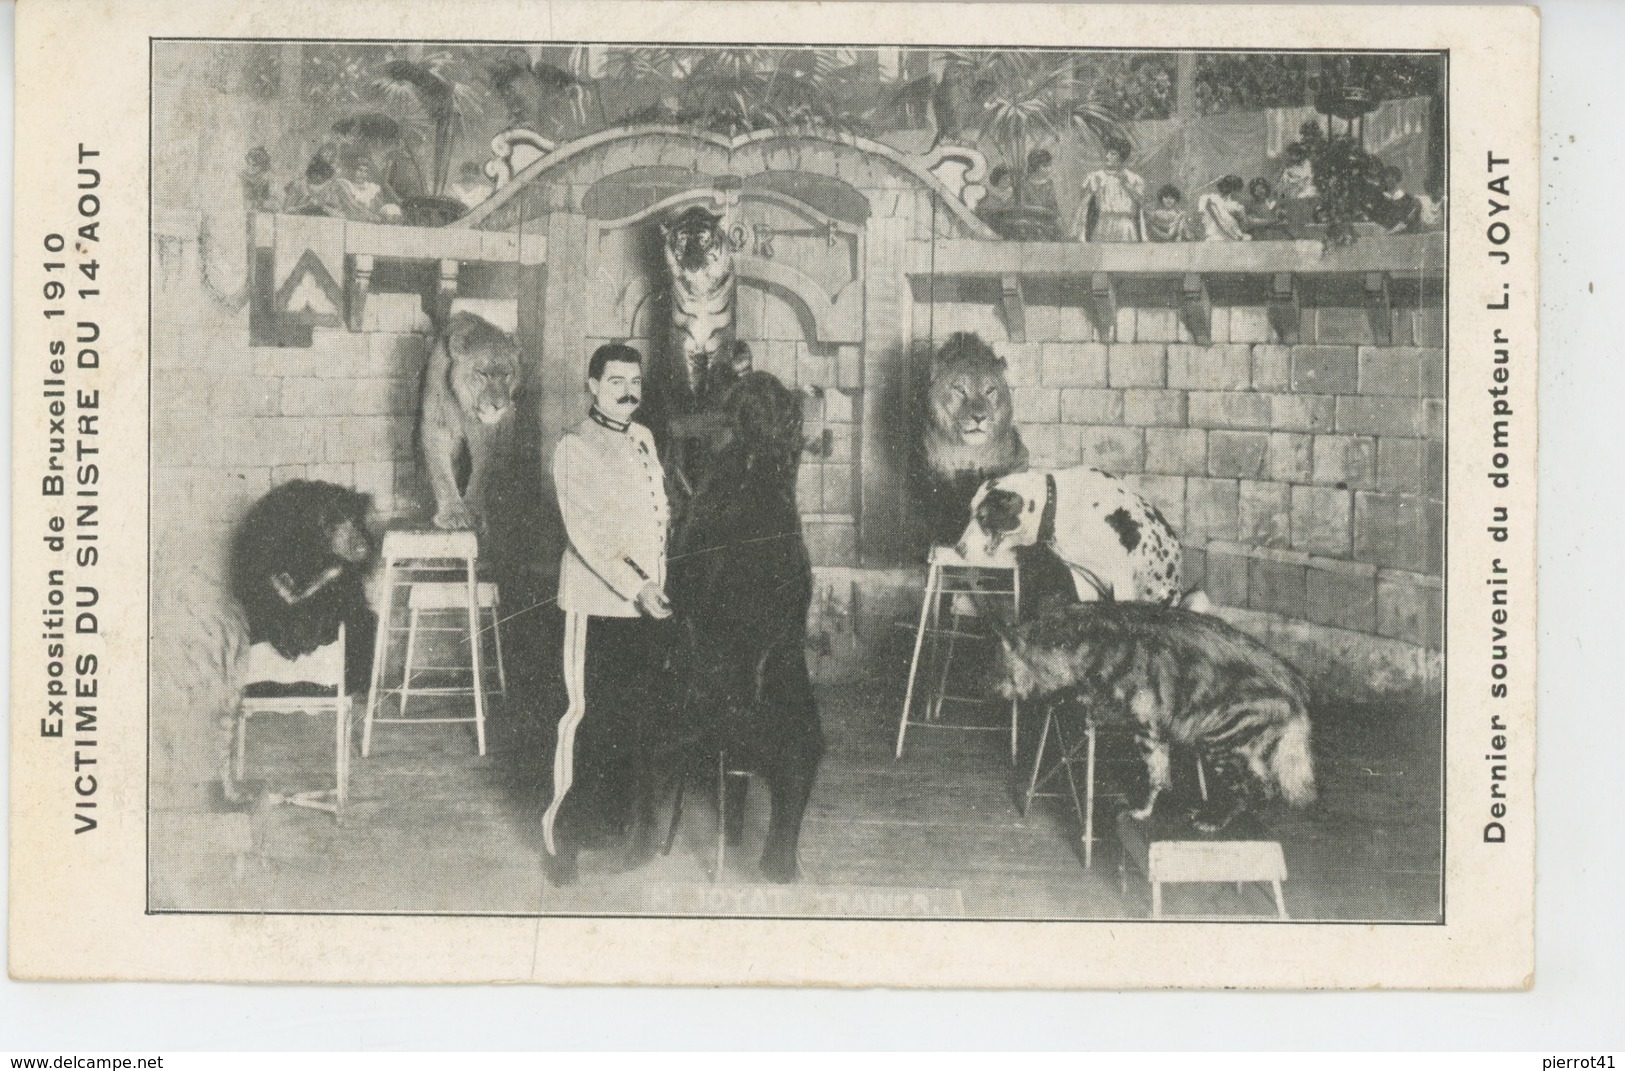 SPECTACLE - CIRQUE - EXPOSITION DE BRUXELLES 1910 - Victimes Du Sinistre - Dernier Souvenir Du Dompteur L. JOYAT - Cirque